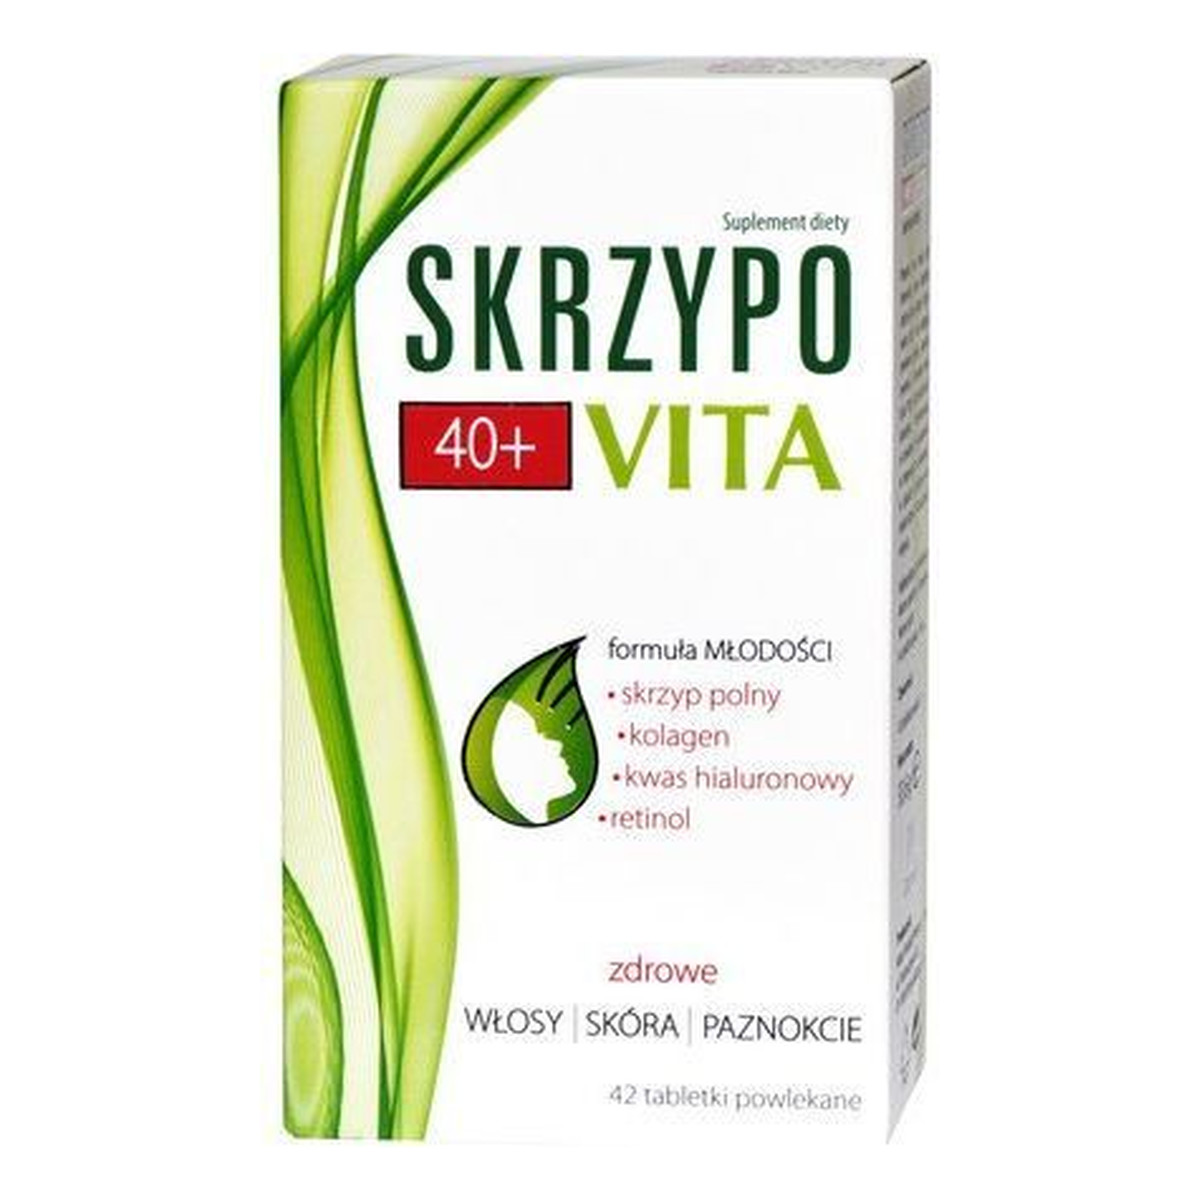 SkrzypoVita Suplement diety 40+ 42 tabletki